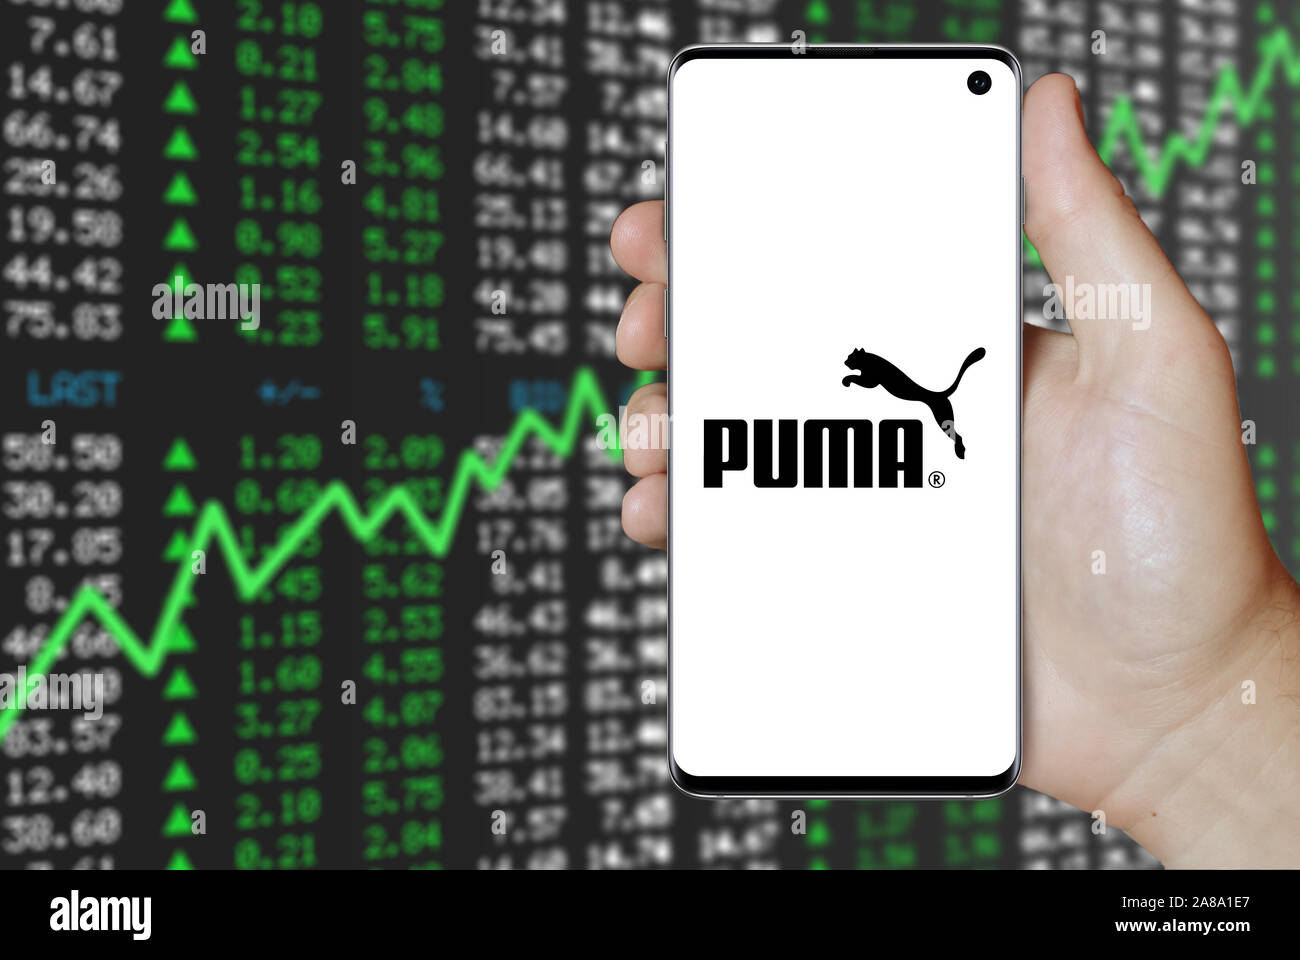 Share price puma